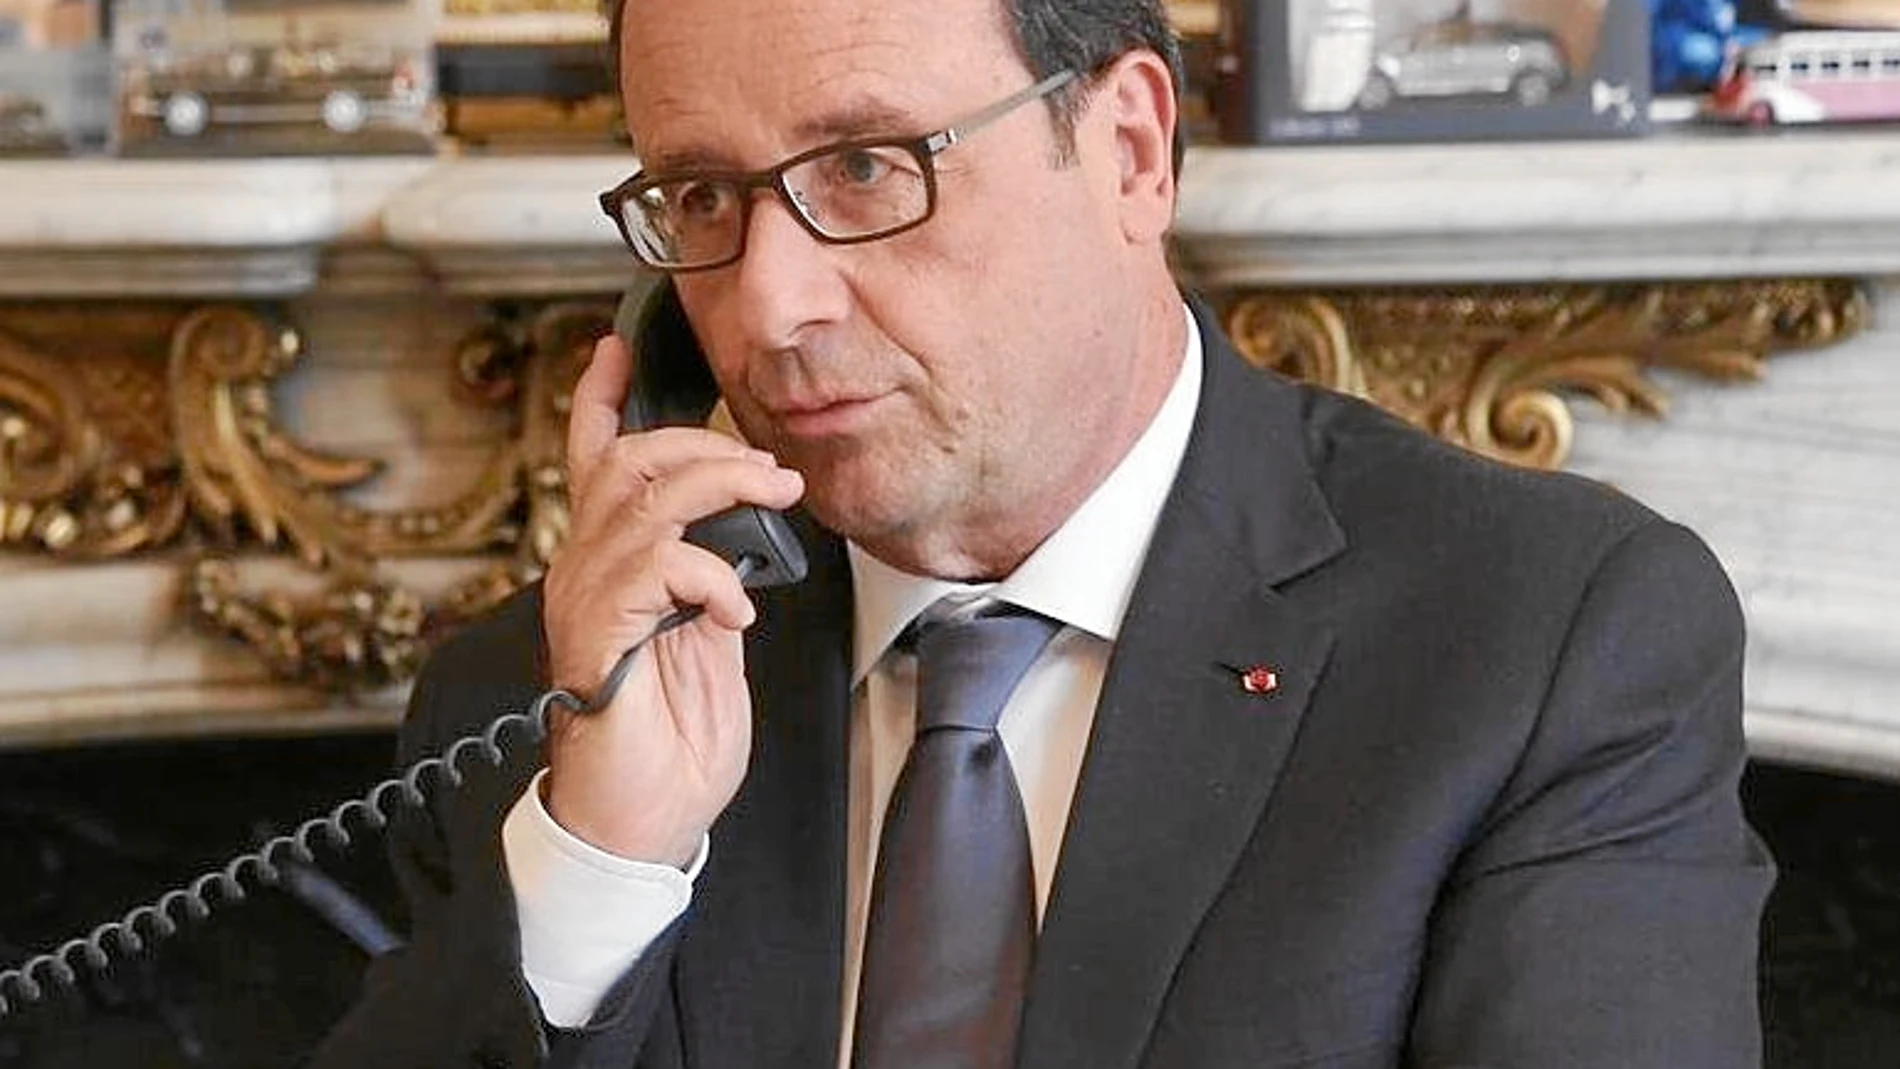 El presidente Hollande habló ayer por teléfono durante 15 minutos con Obama y éste le confirmó que «EE UU ya no espía a sus aliados»